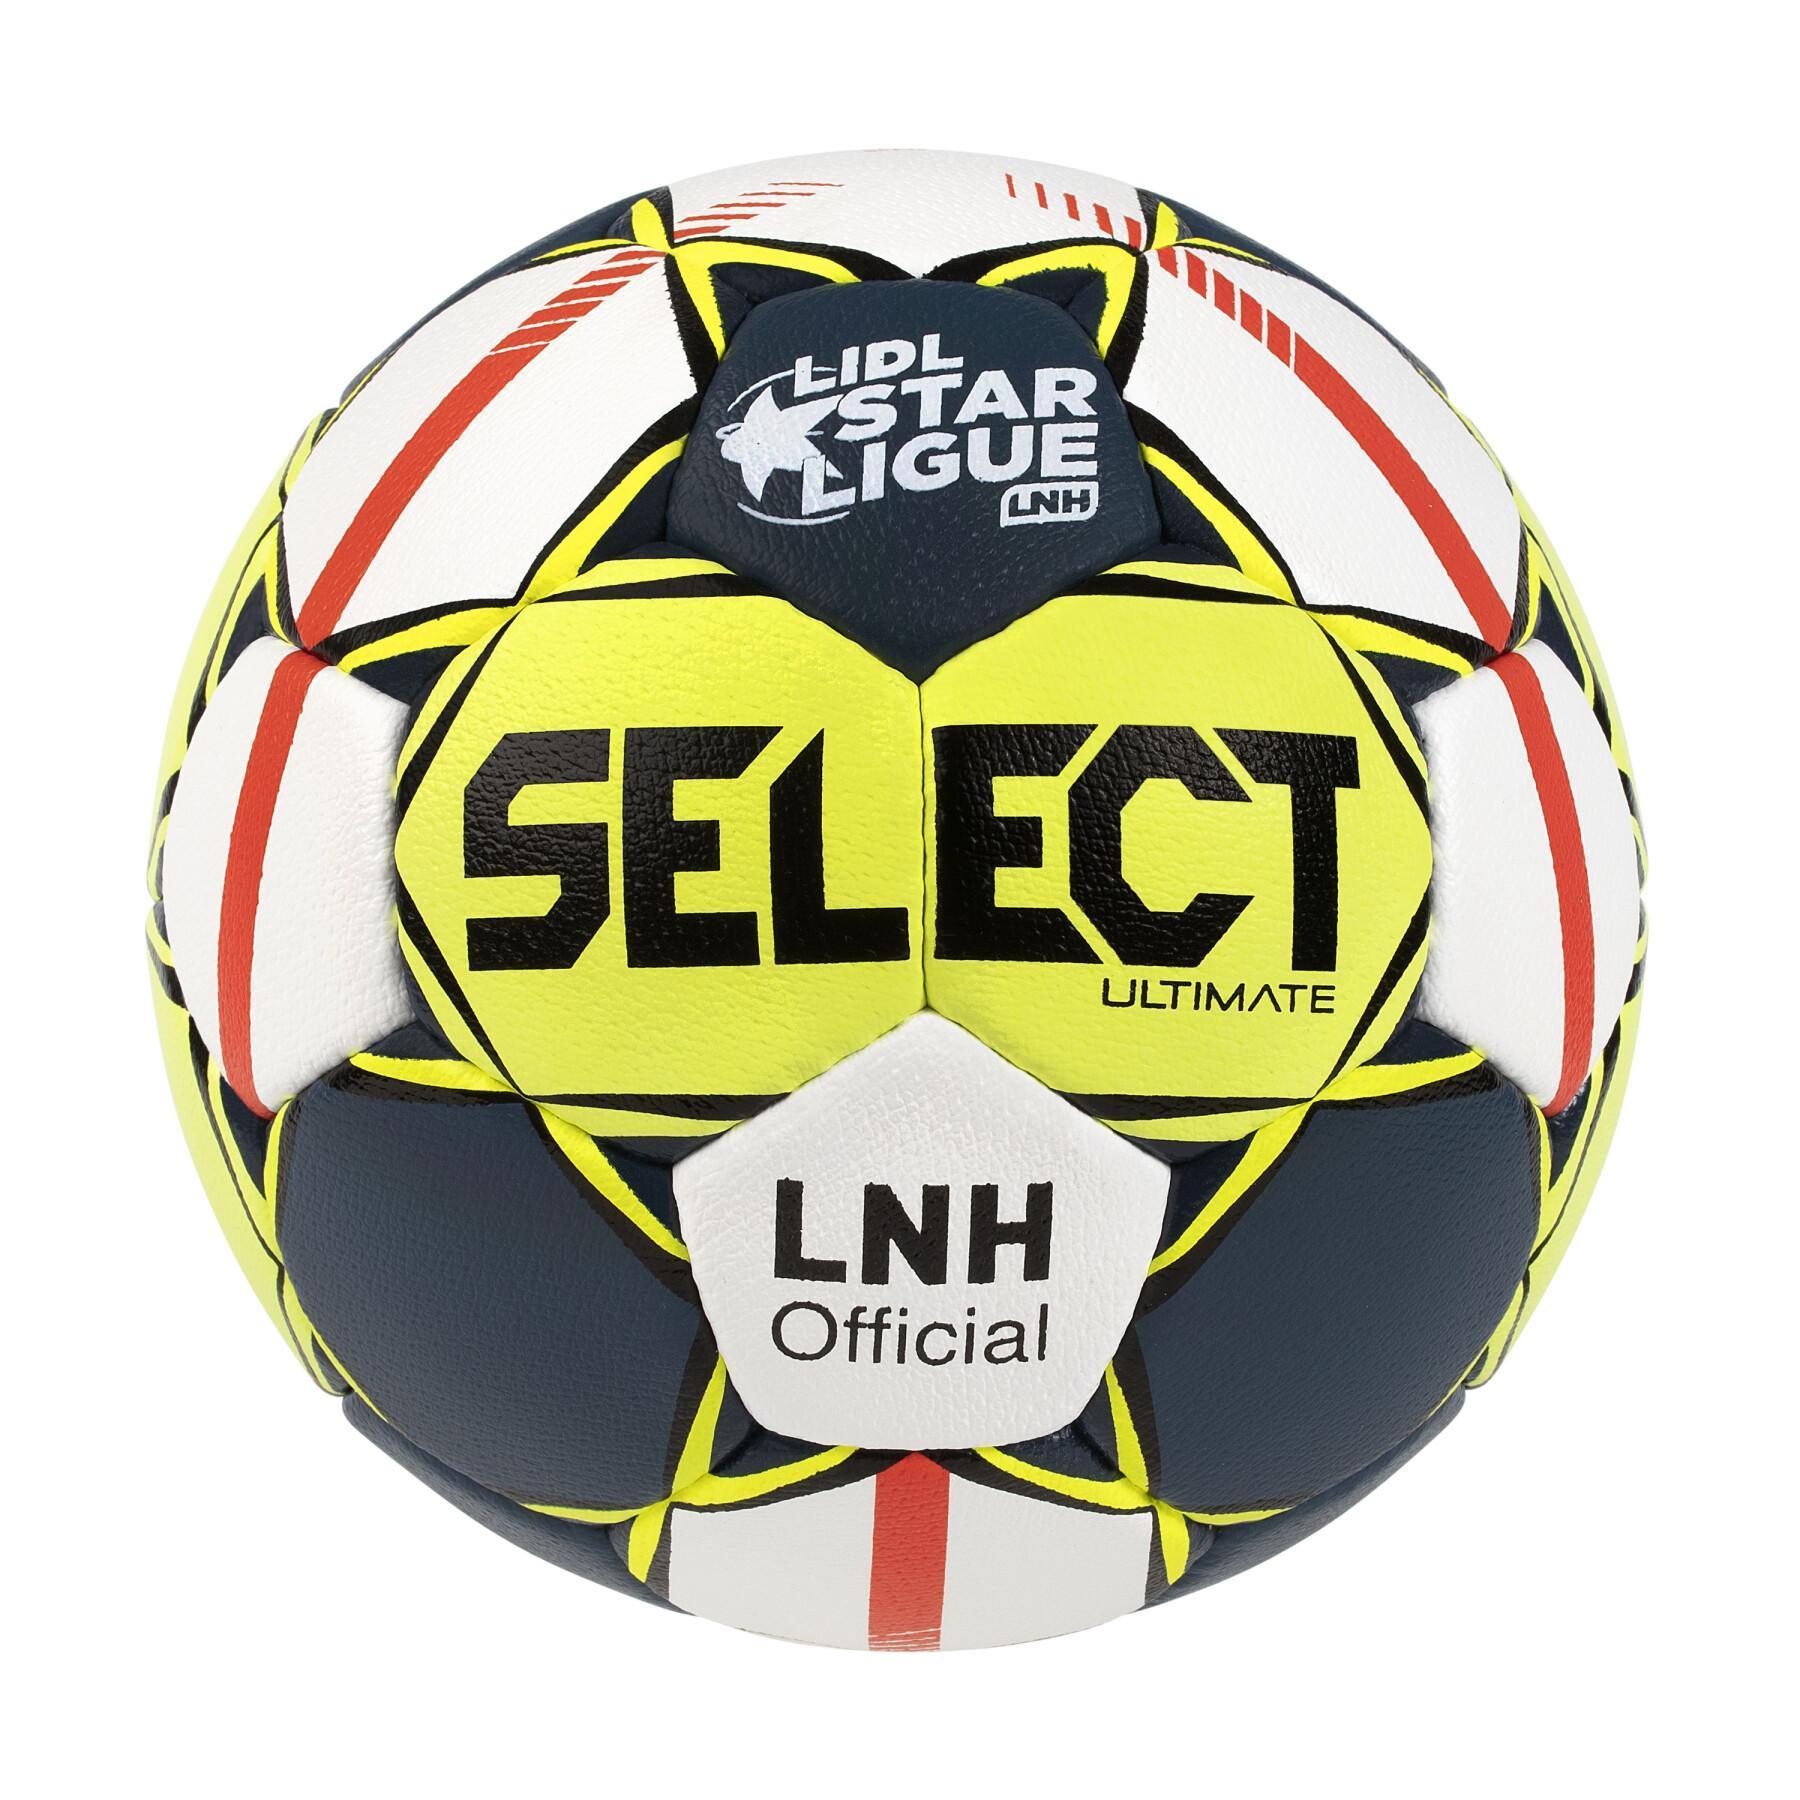 Offizieller Ball LNH 2019/20